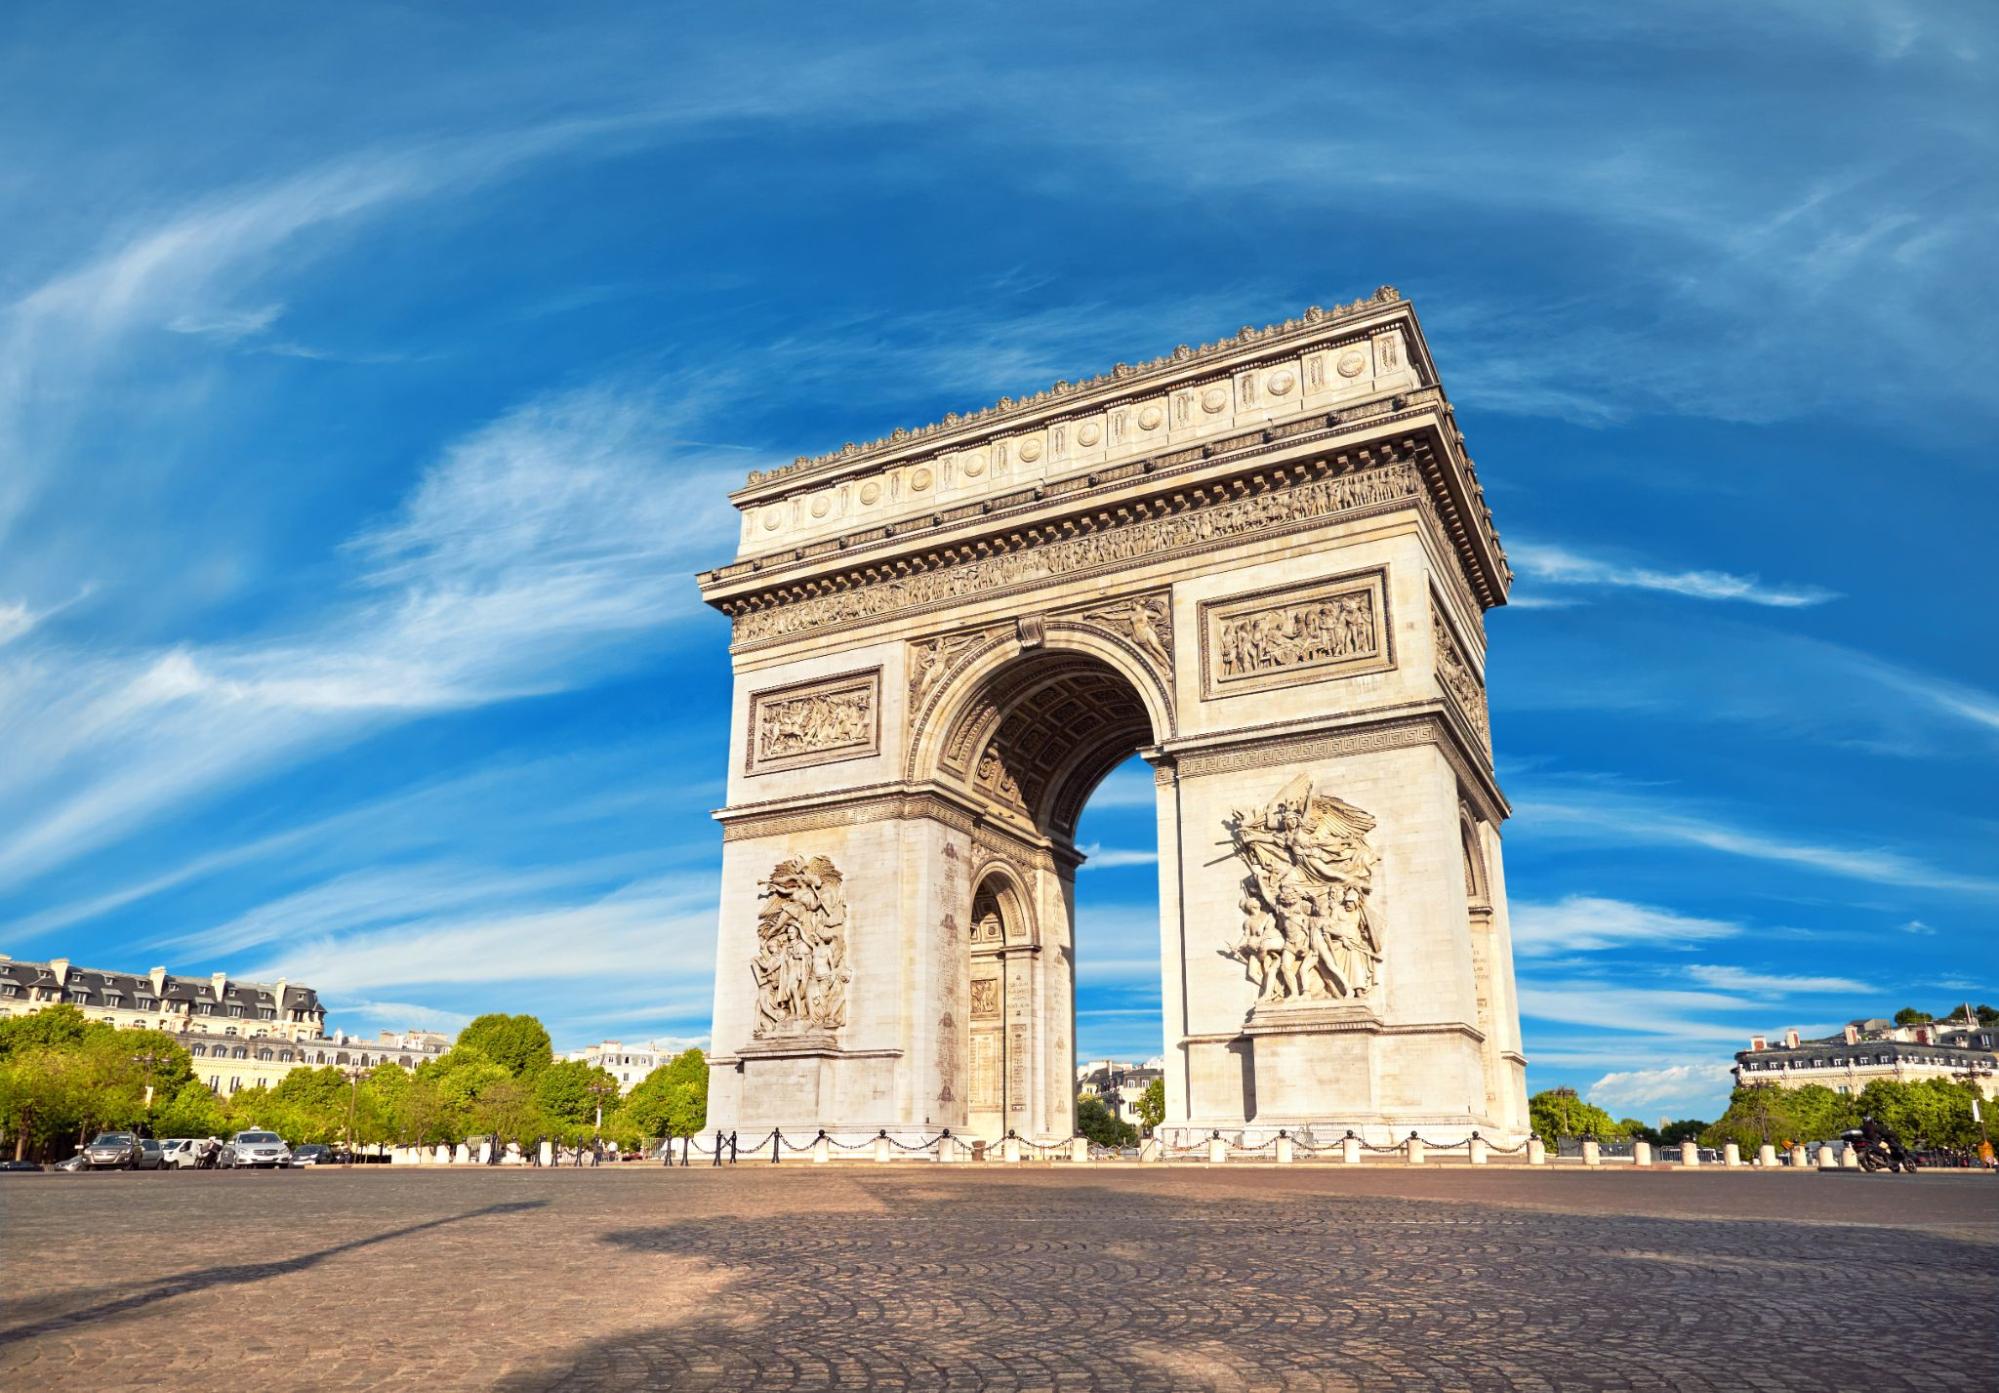 เที่ยวฝรั่งเศส ประตูชัยฝรั่งเศส (Arc de Triomphe)